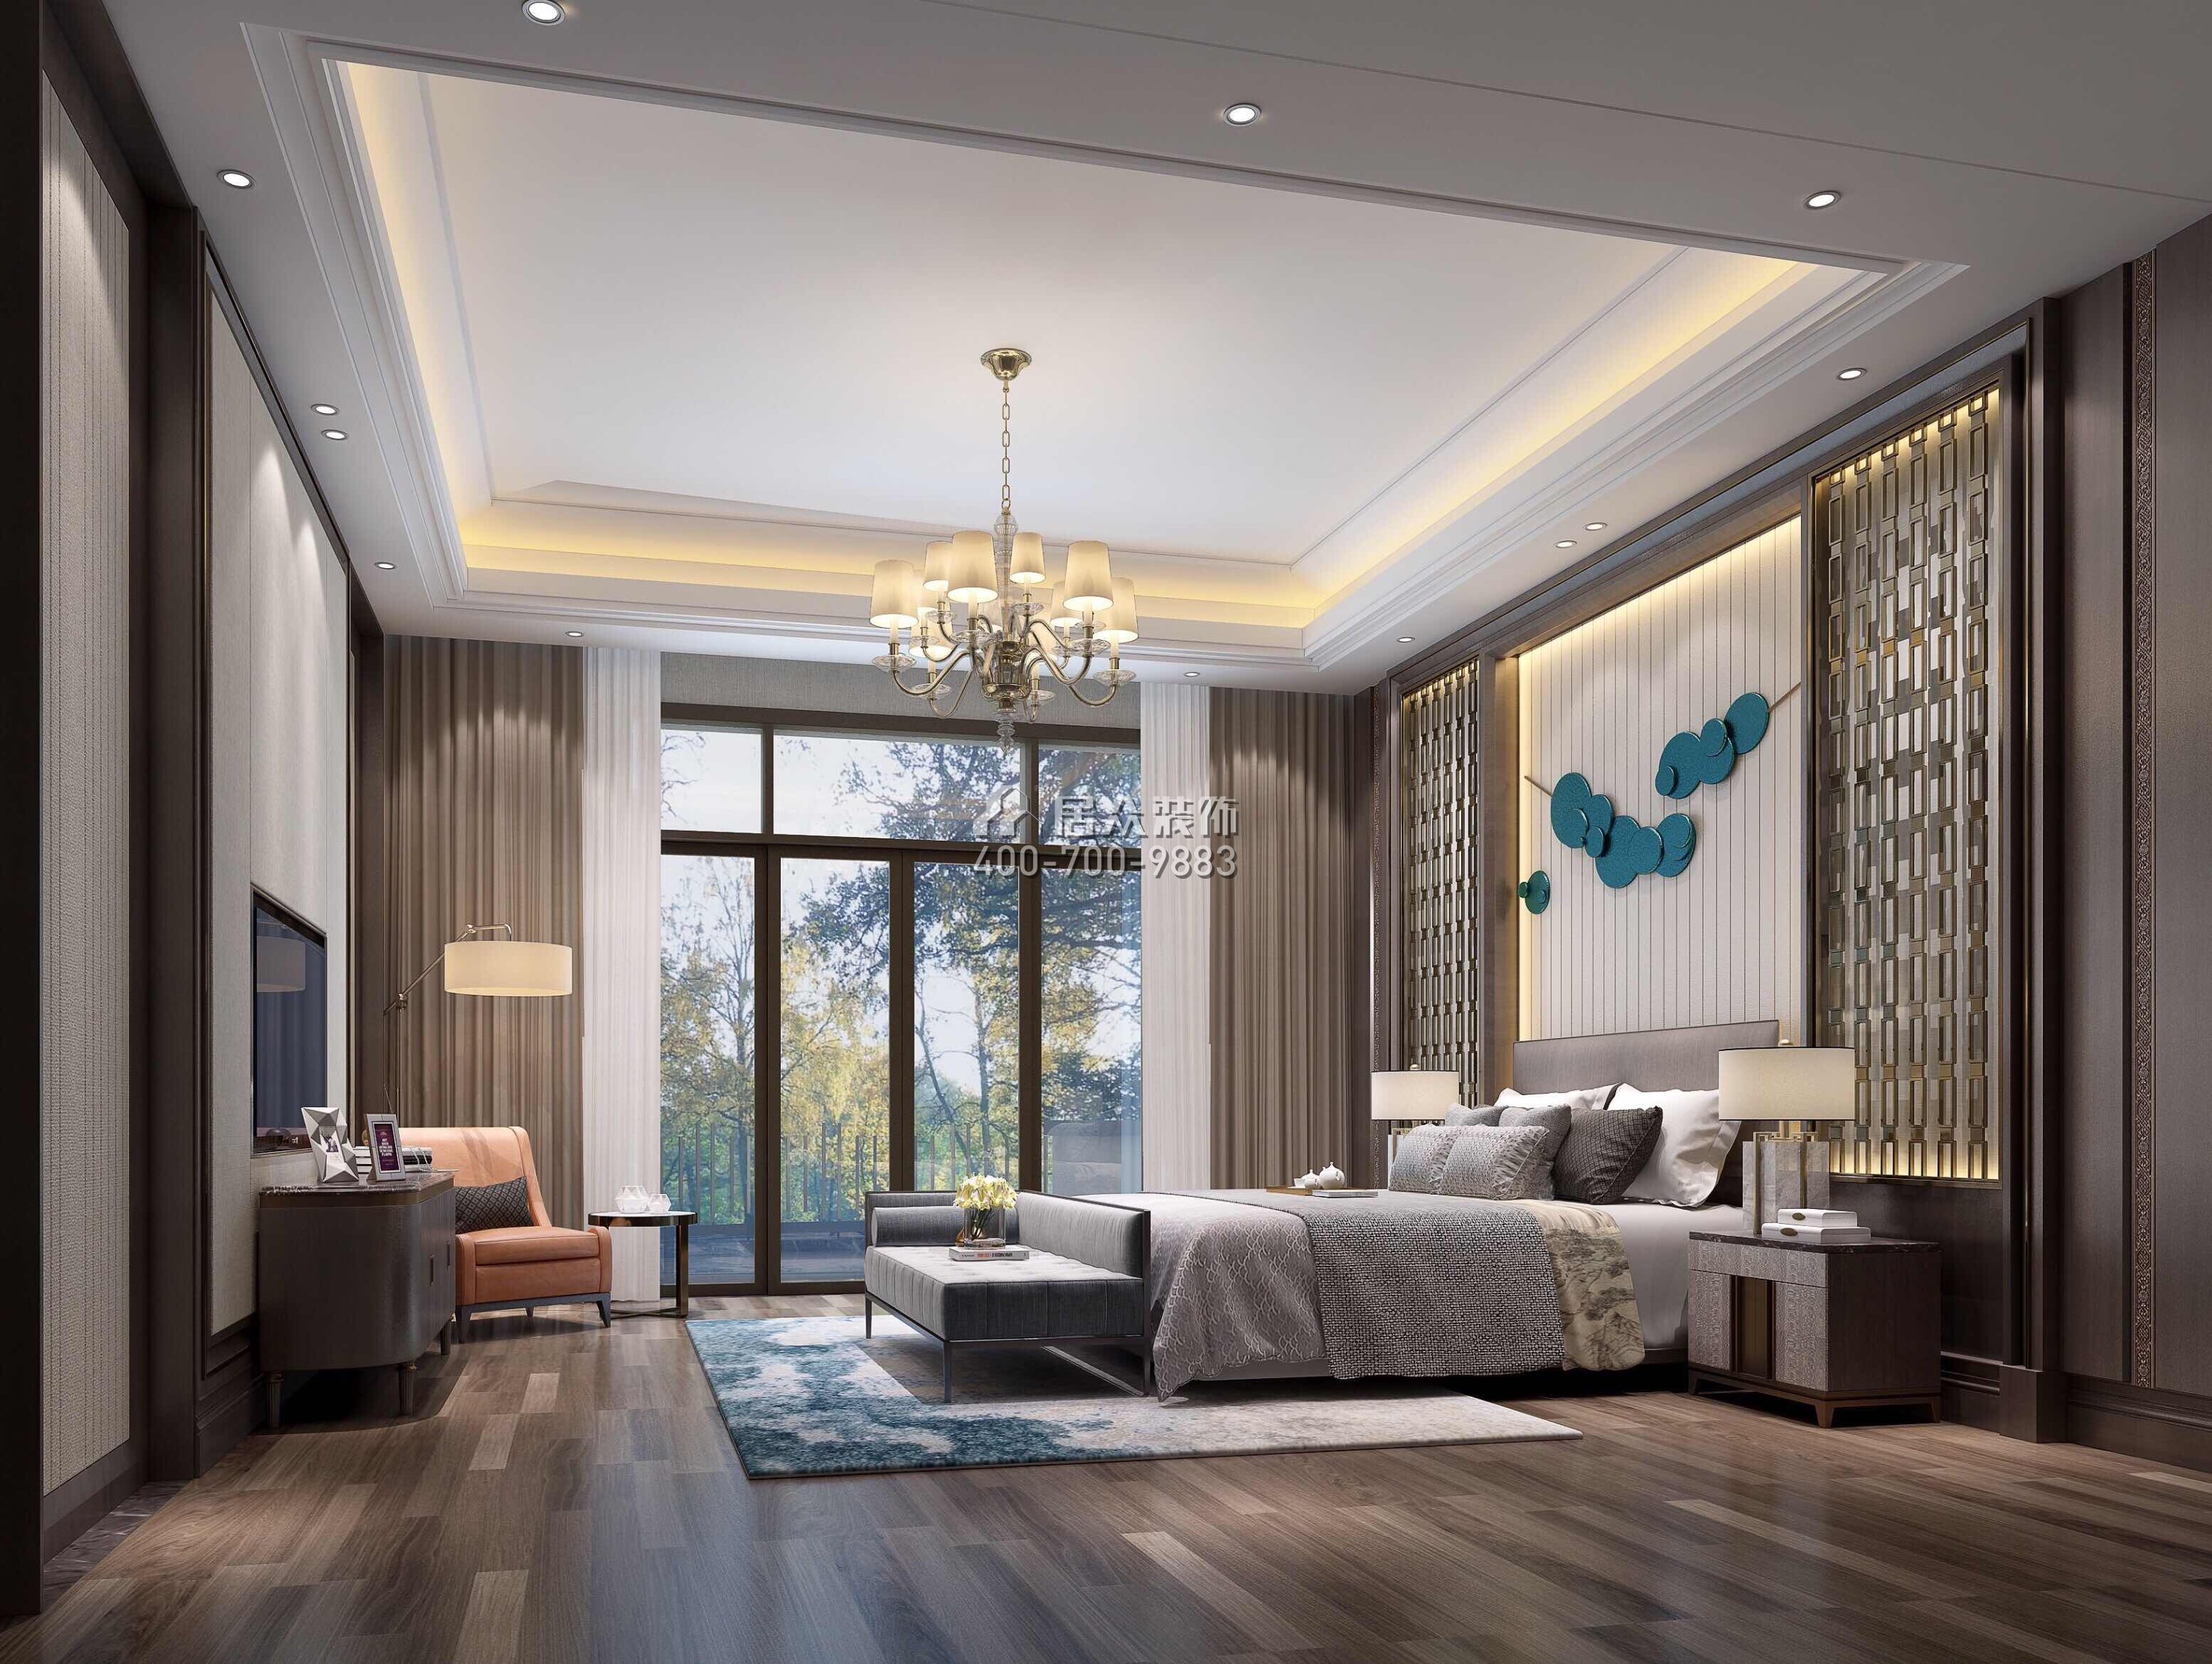 江畔豪庭500平方米中式风格别墅户型卧室装修效果图